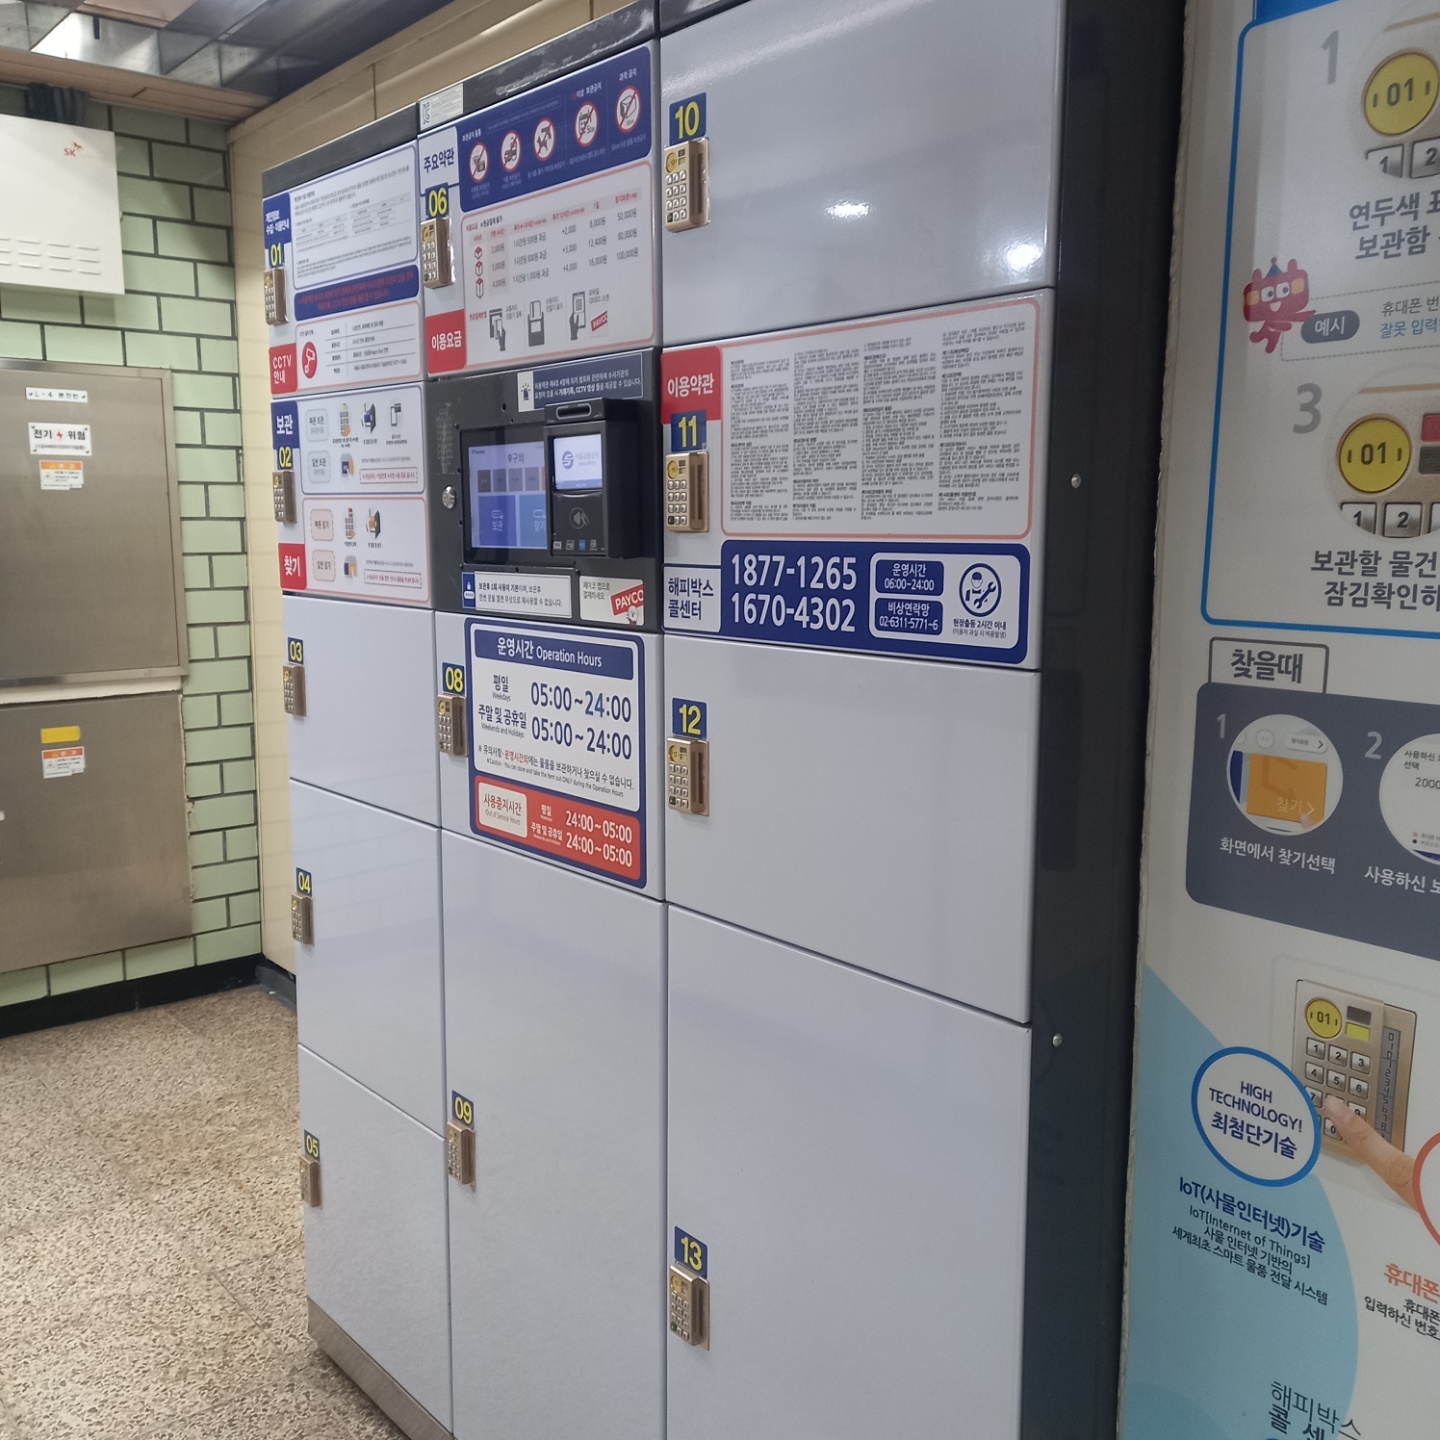 서울시 지하철 보관함 서비스 또타라커 이용 후기